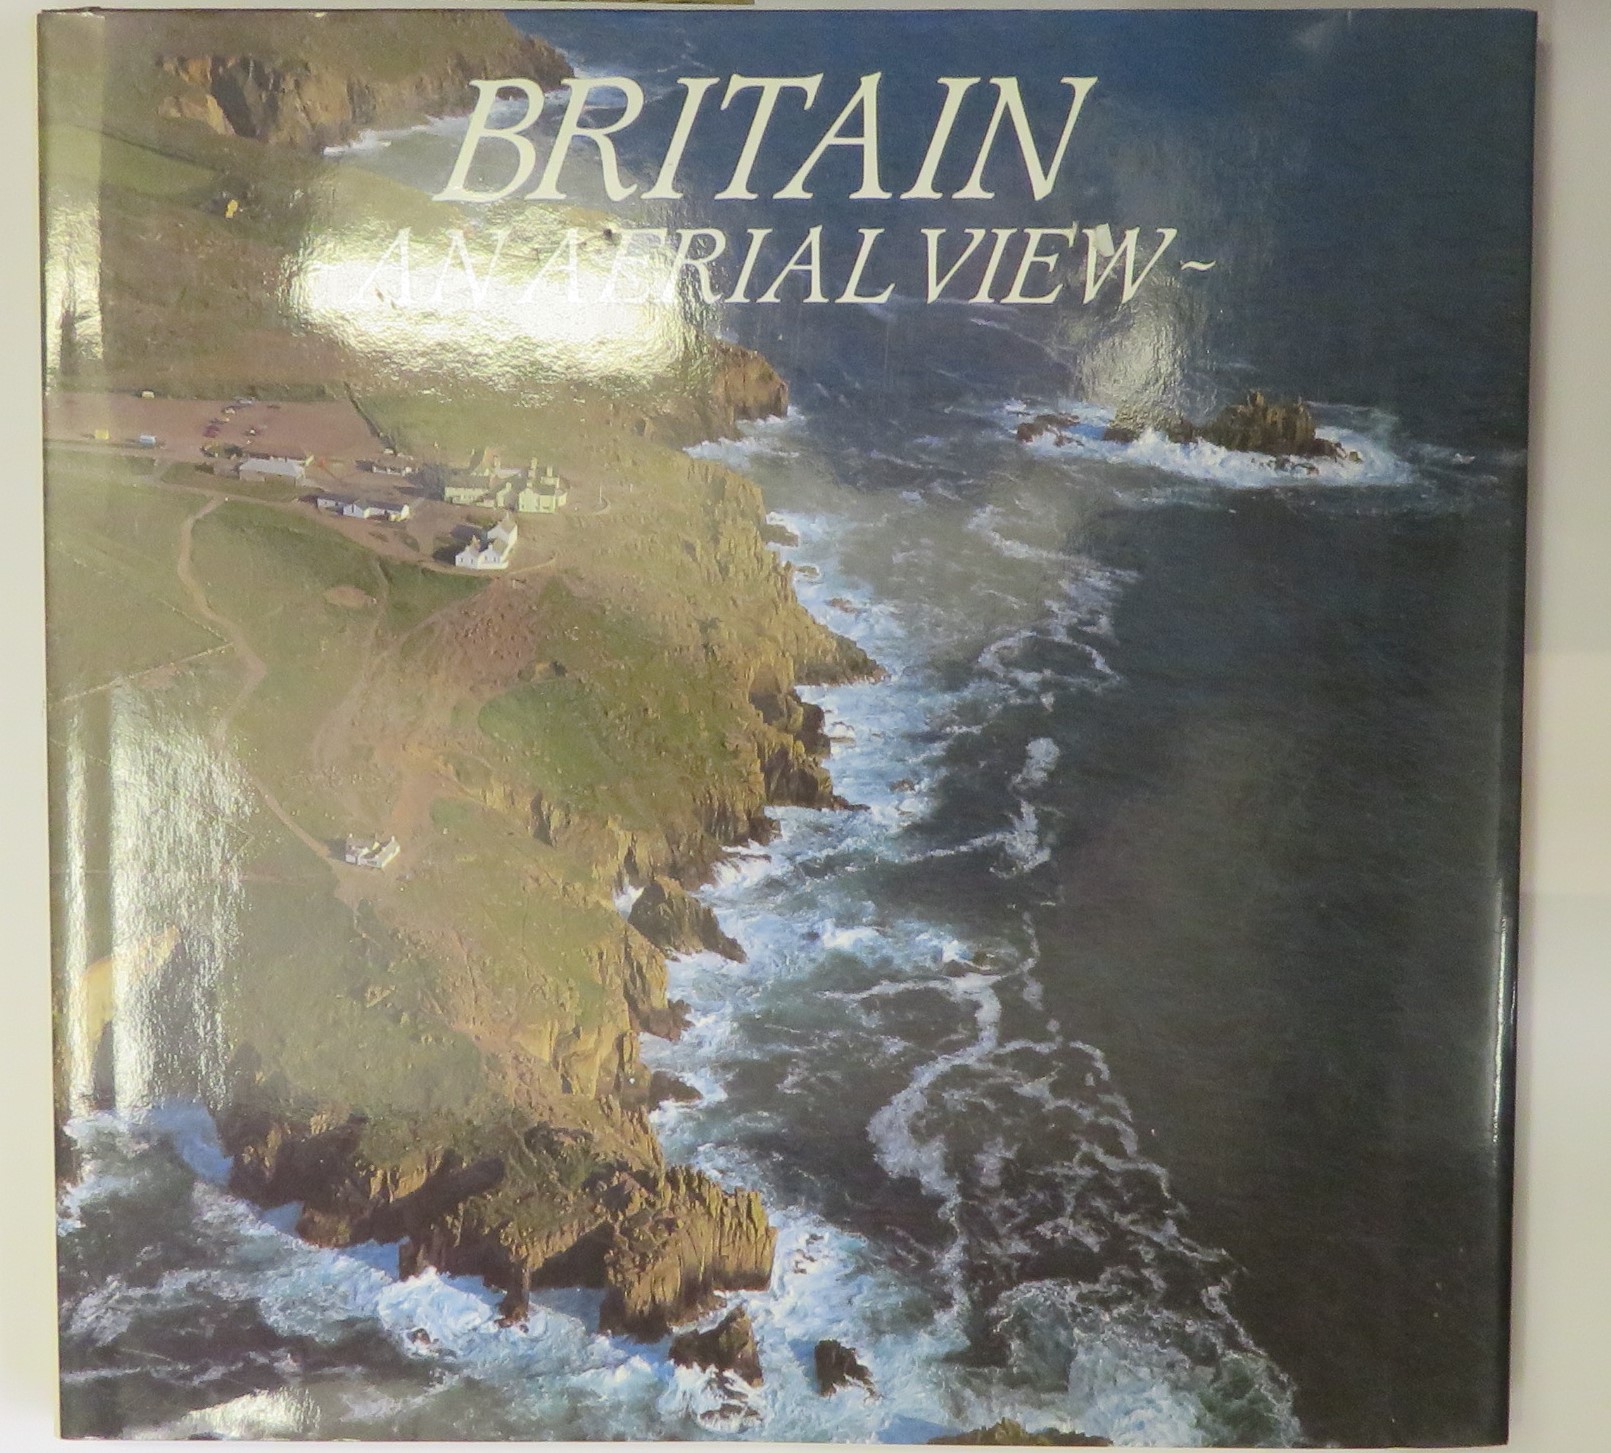 Britain- An Aerial View